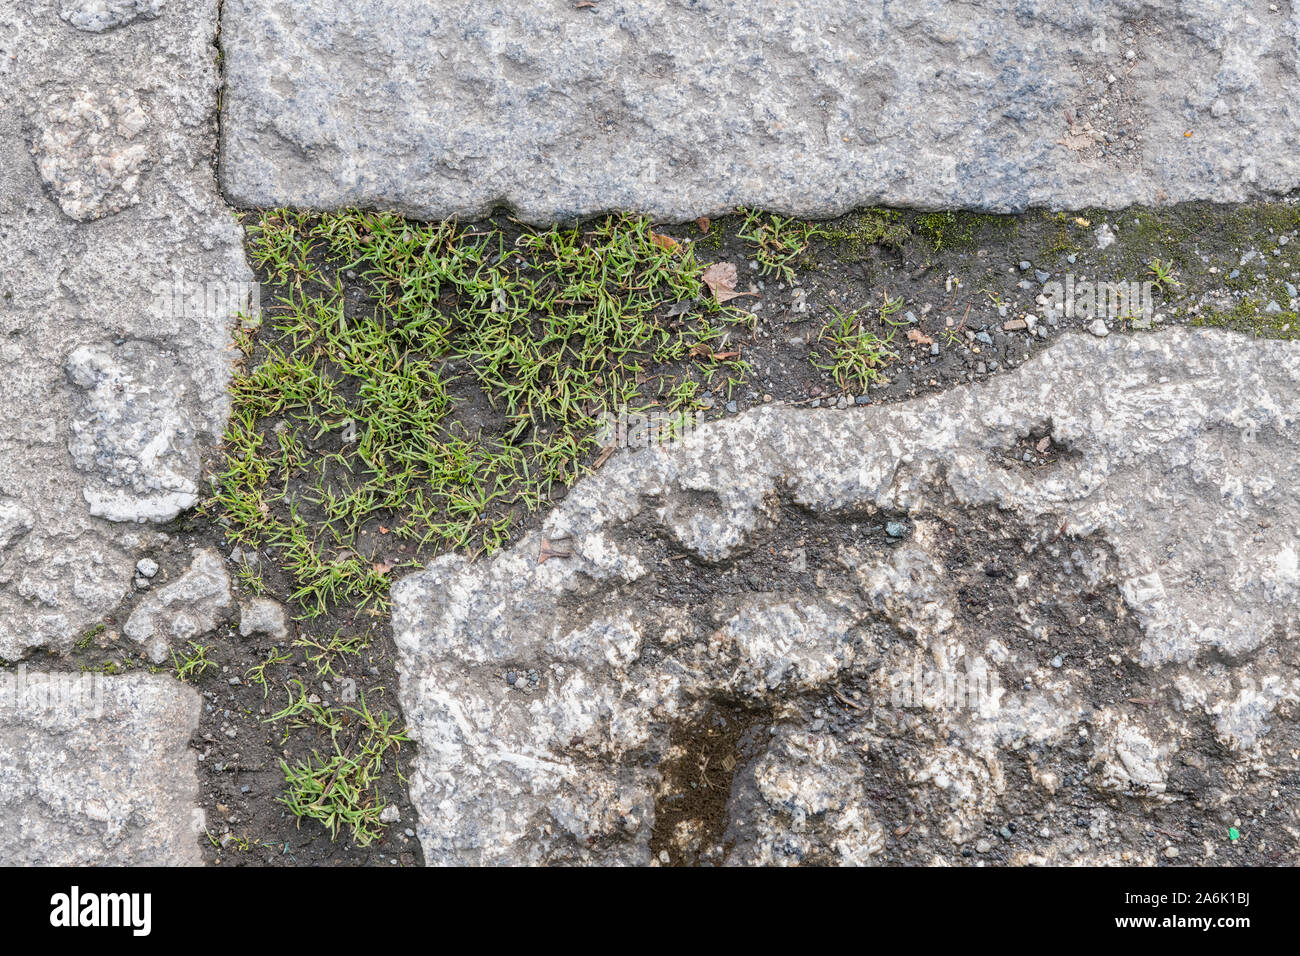 Plant plants de mauvaises herbes qui poussent à travers les fissures dans le pavage en pierre. Par métaphore, lorgnant les mauvaises herbes communes isolées, les mauvaises herbes et plantes. Banque D'Images